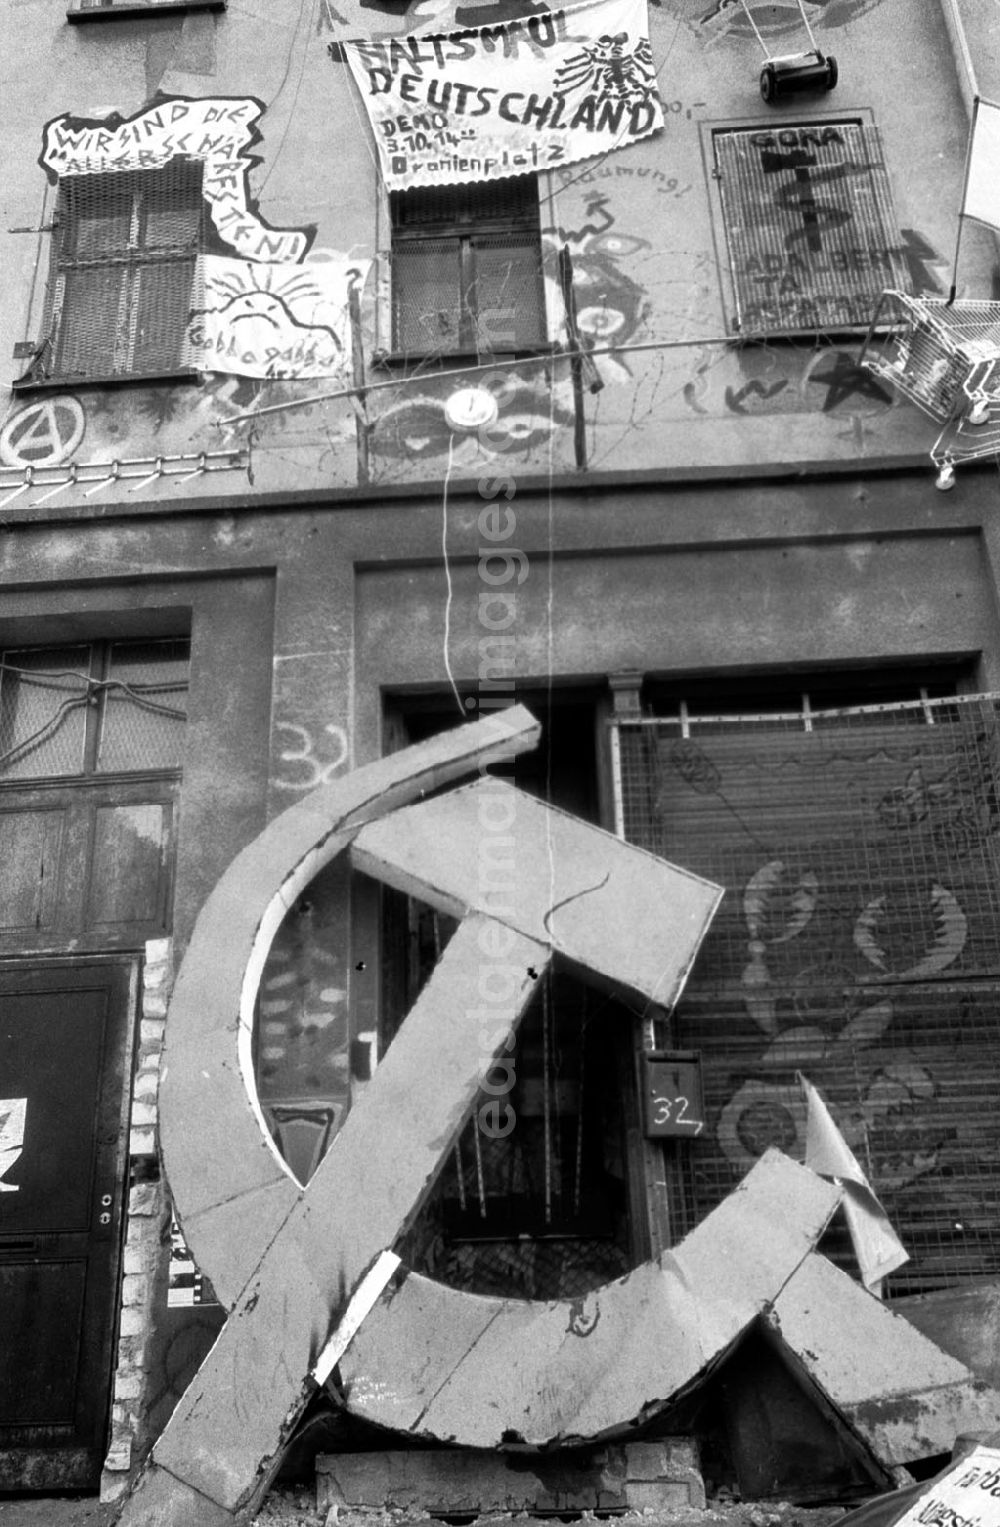 GDR image archive: Berlin - Hausfassade eines Besetzerhauses in Berlin-Kreuzberg in der Adalbertstrasse, davor übergross das Symbol der Sowjetunion - Hammer und Sichel.